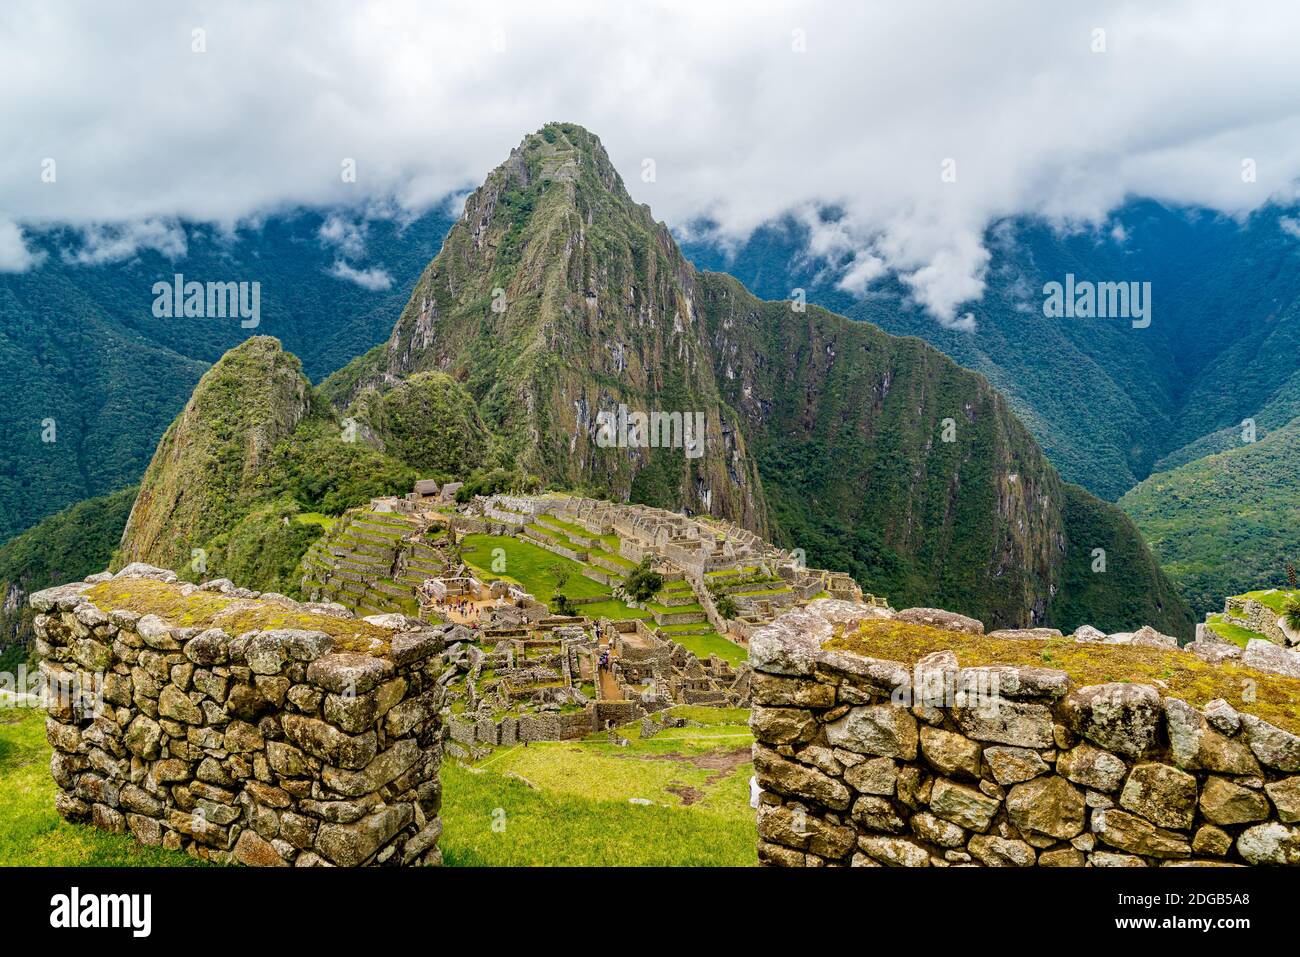 Machu Picchu The Lost Incan City In Peru Stock Photo Alamy